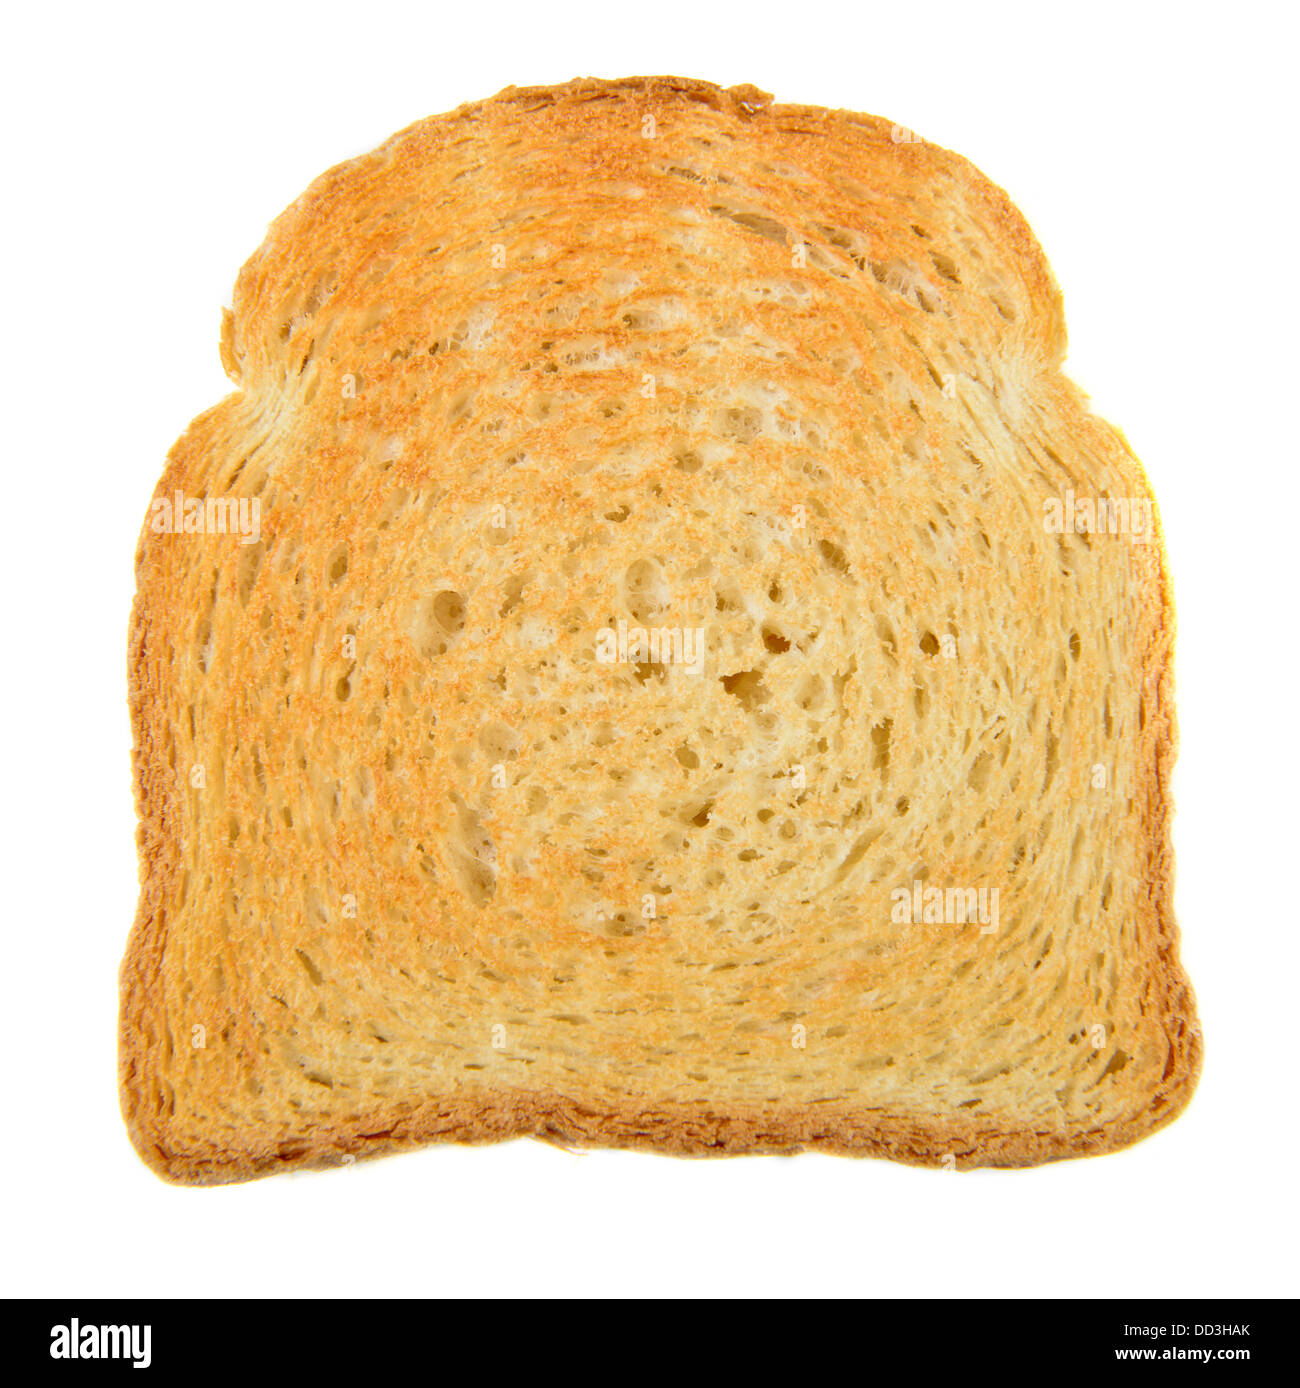 Toast isolated on white background Stock Photo